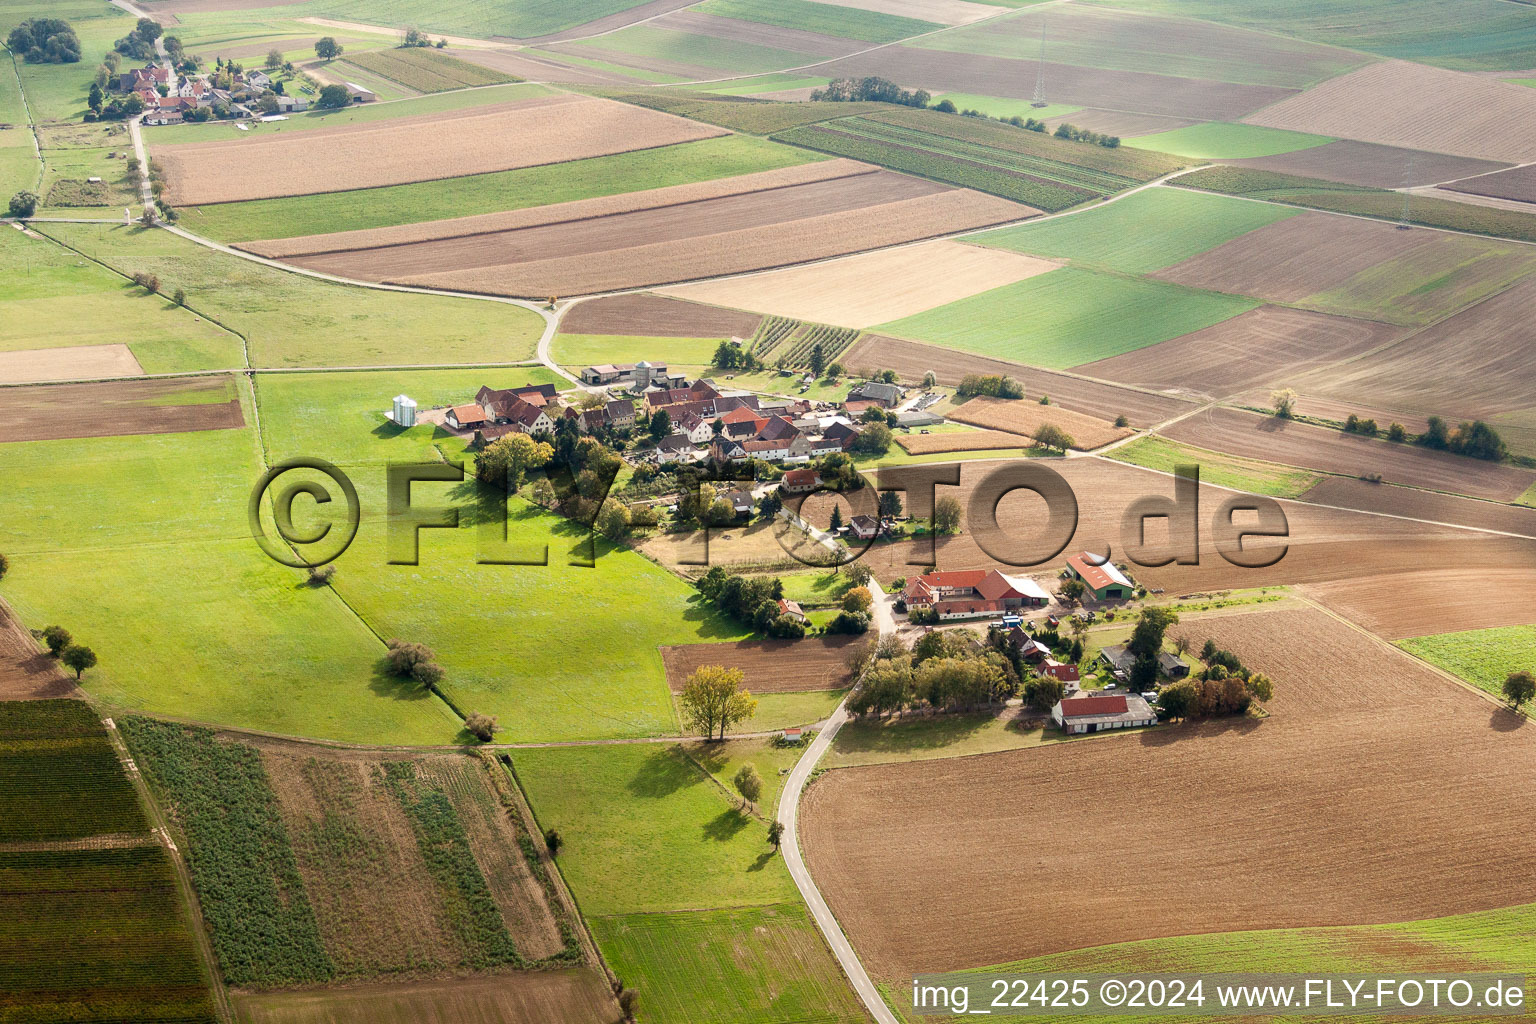 Vue aérienne de Propriété d'une ferme en bordure de champs cultivés dans le quartier Deutschhof à Kapellen-Drusweiler à Deutschhof dans le département Rhénanie-Palatinat, Allemagne